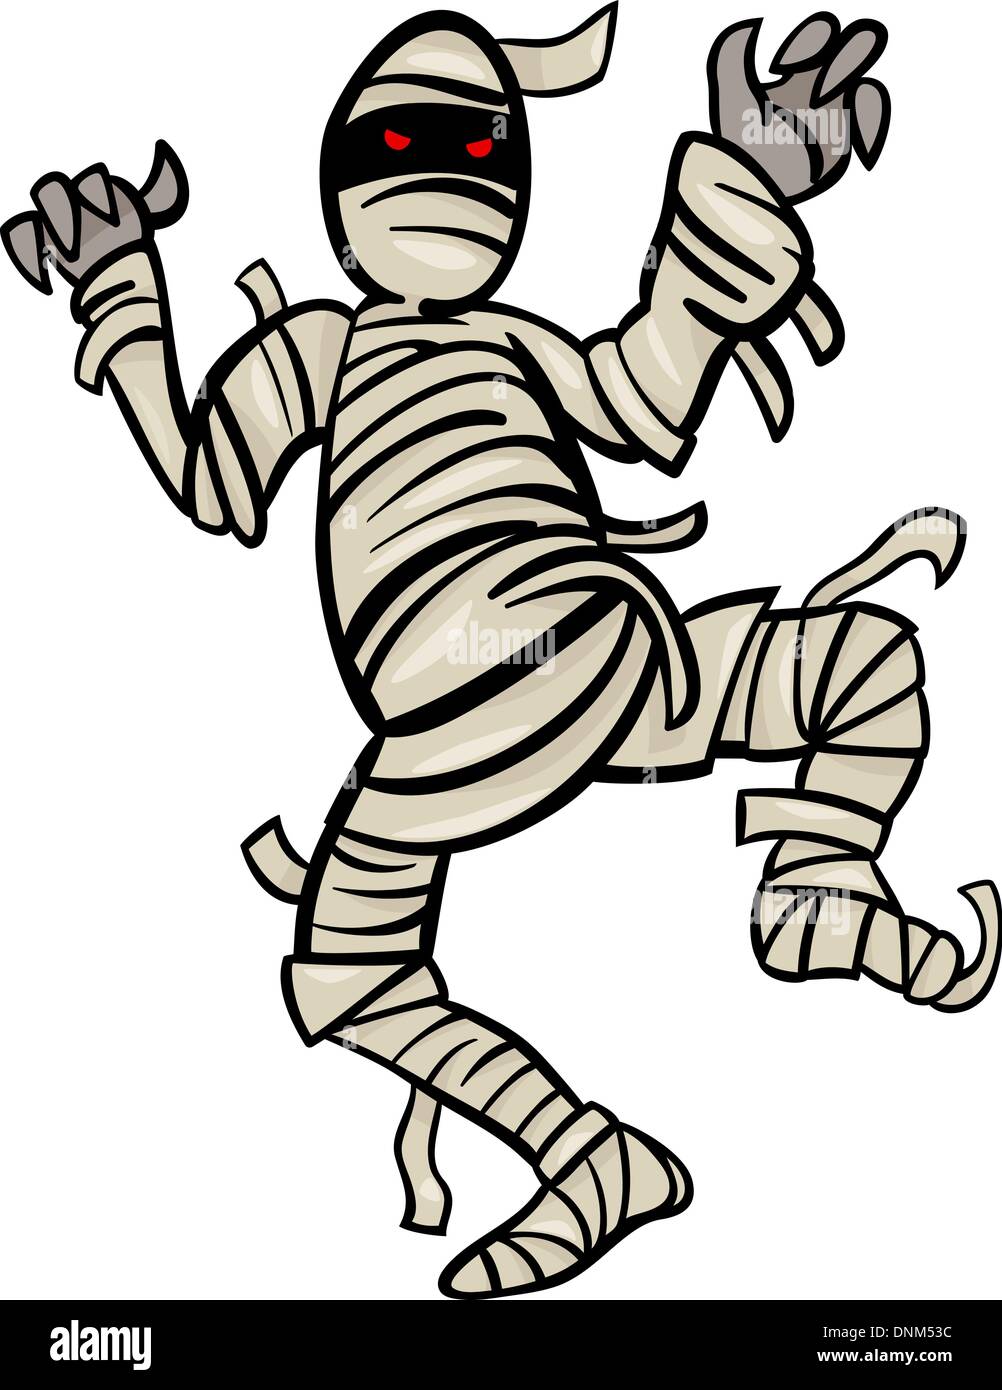 scary mummy cartoon